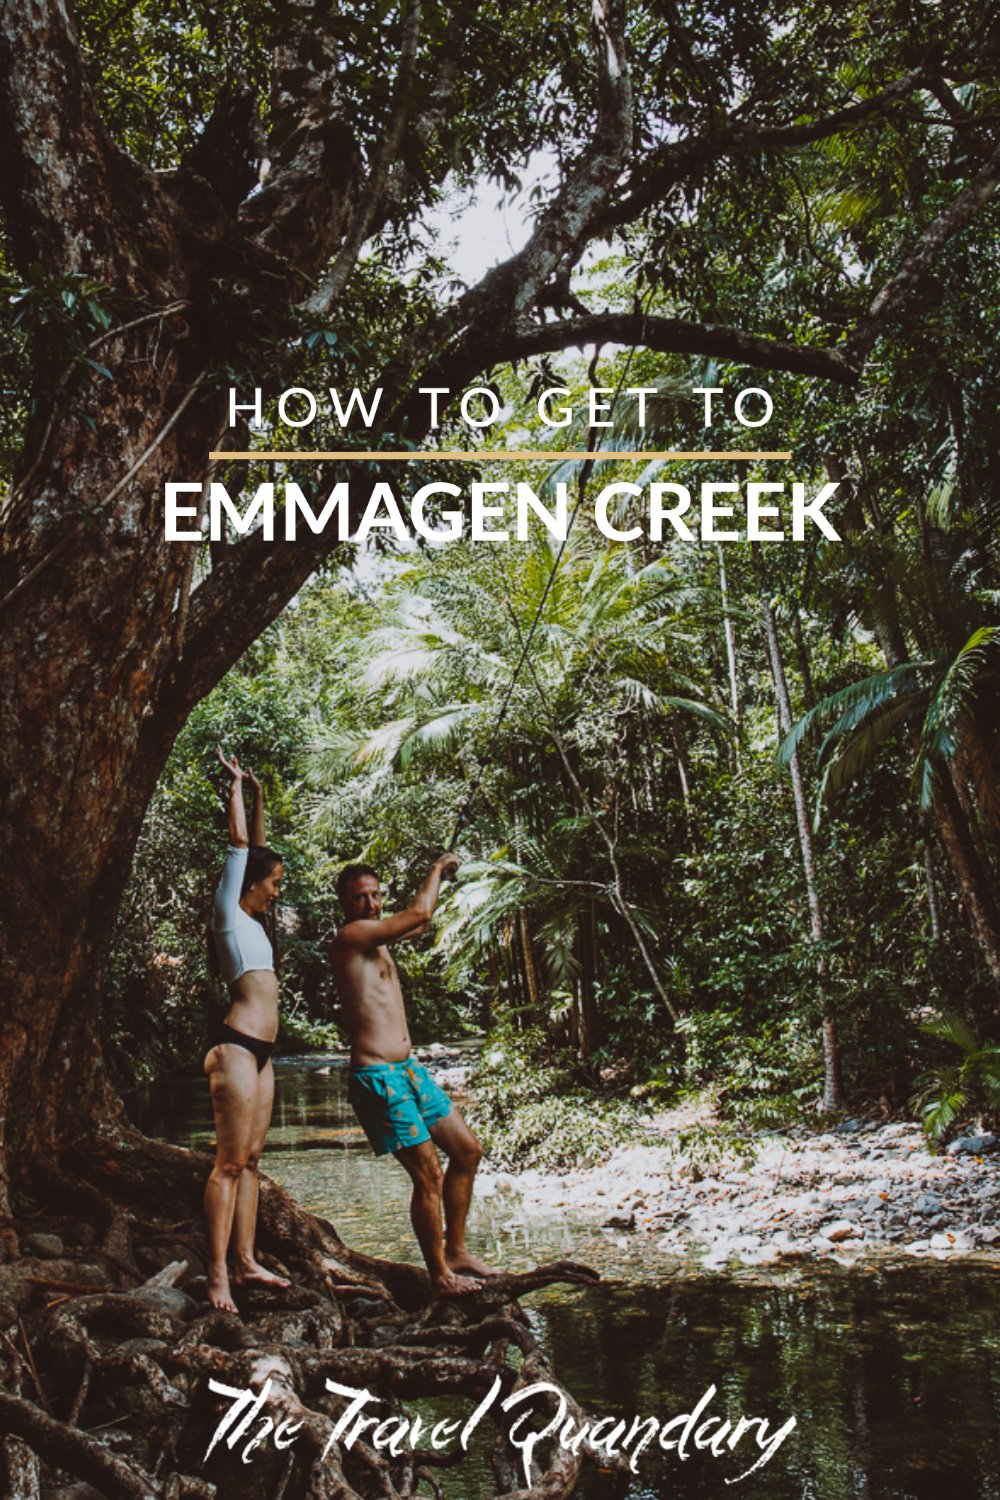 How To Get to Emmagen Creek